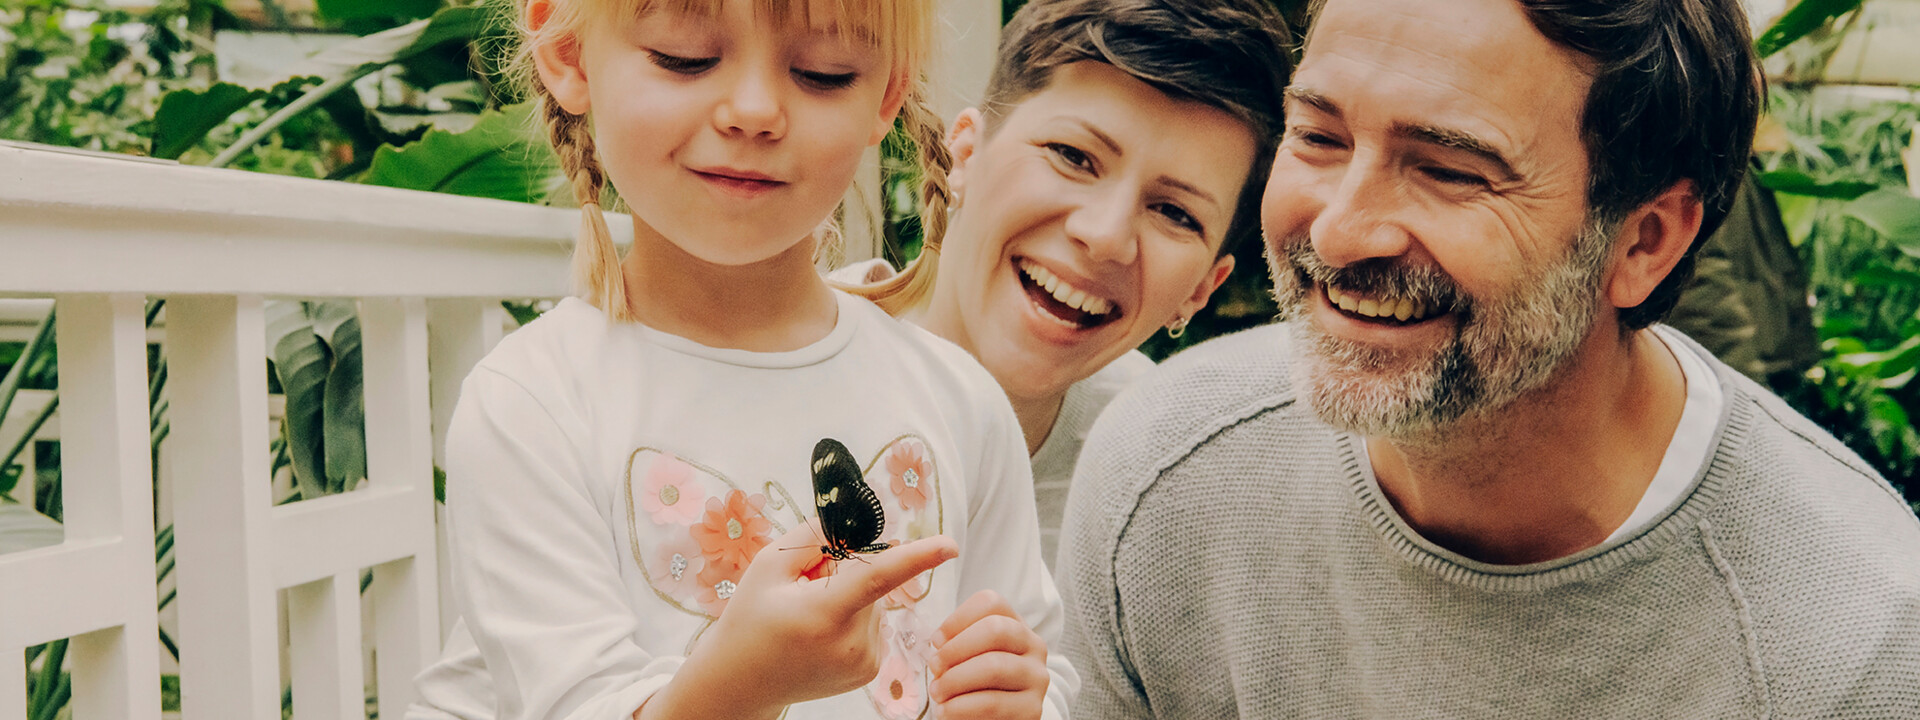 Familie im Schmetterlingsgarten in Sayn lachen während Tochter einen Schmetterling auf ihrem Finger beobachtet ©Koblenz-Touristik GmbH, Philip Bruederle